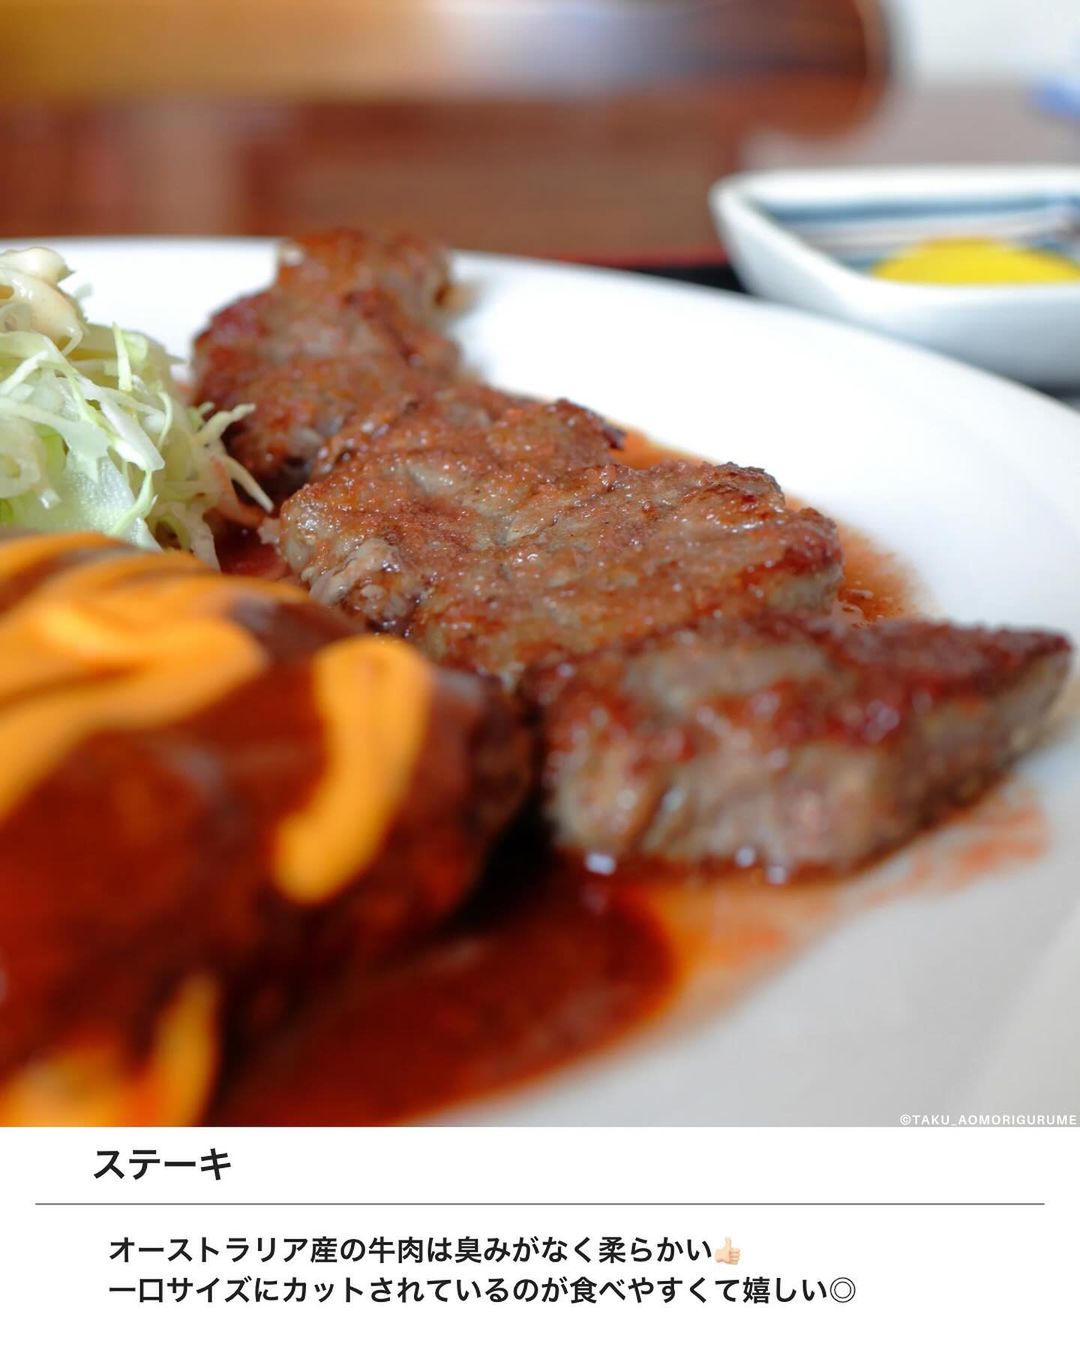 【八戸市・にんにく亭】カットステーキとハンバーグ定食 チーズトッピング